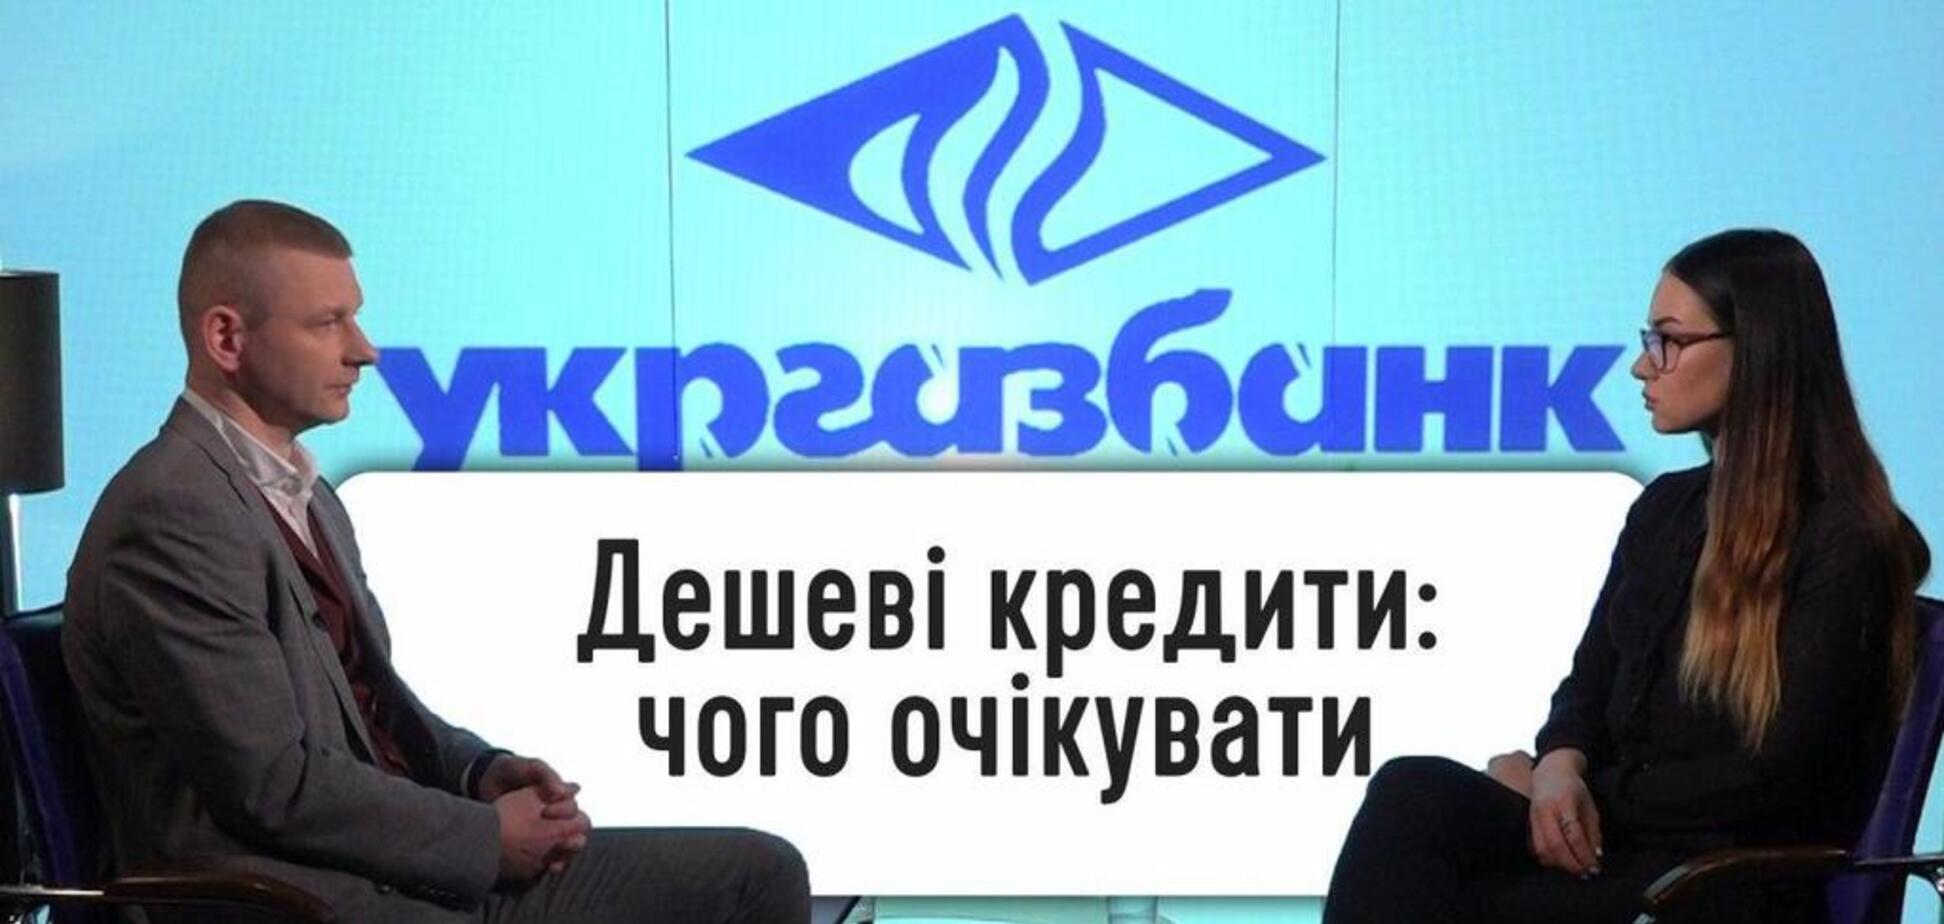 Які гроші чекають український бізнес: банкір пояснює, як будуть кредитувати у 2020 році